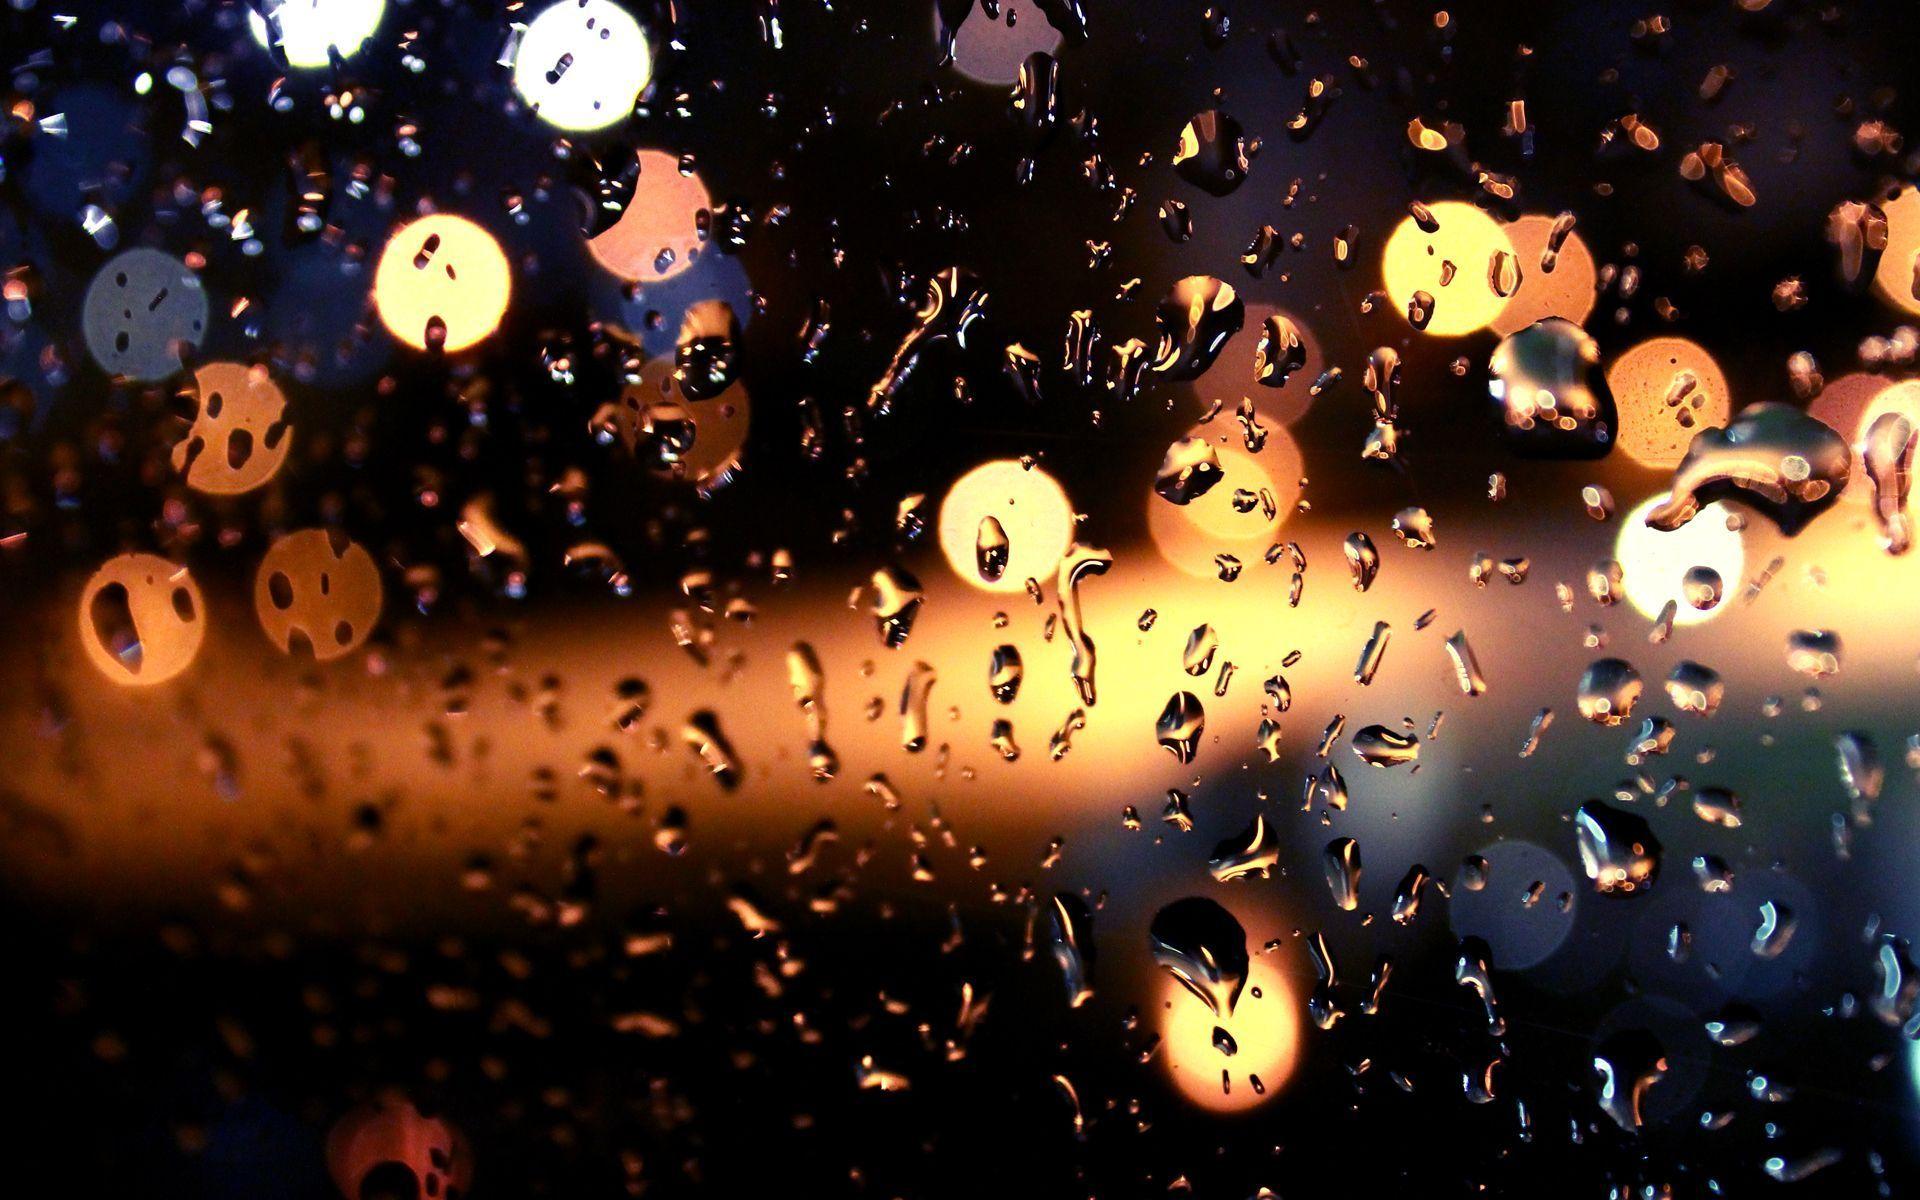 Raindrops Window Desktop Wallpaper 50536 1920x1080 px